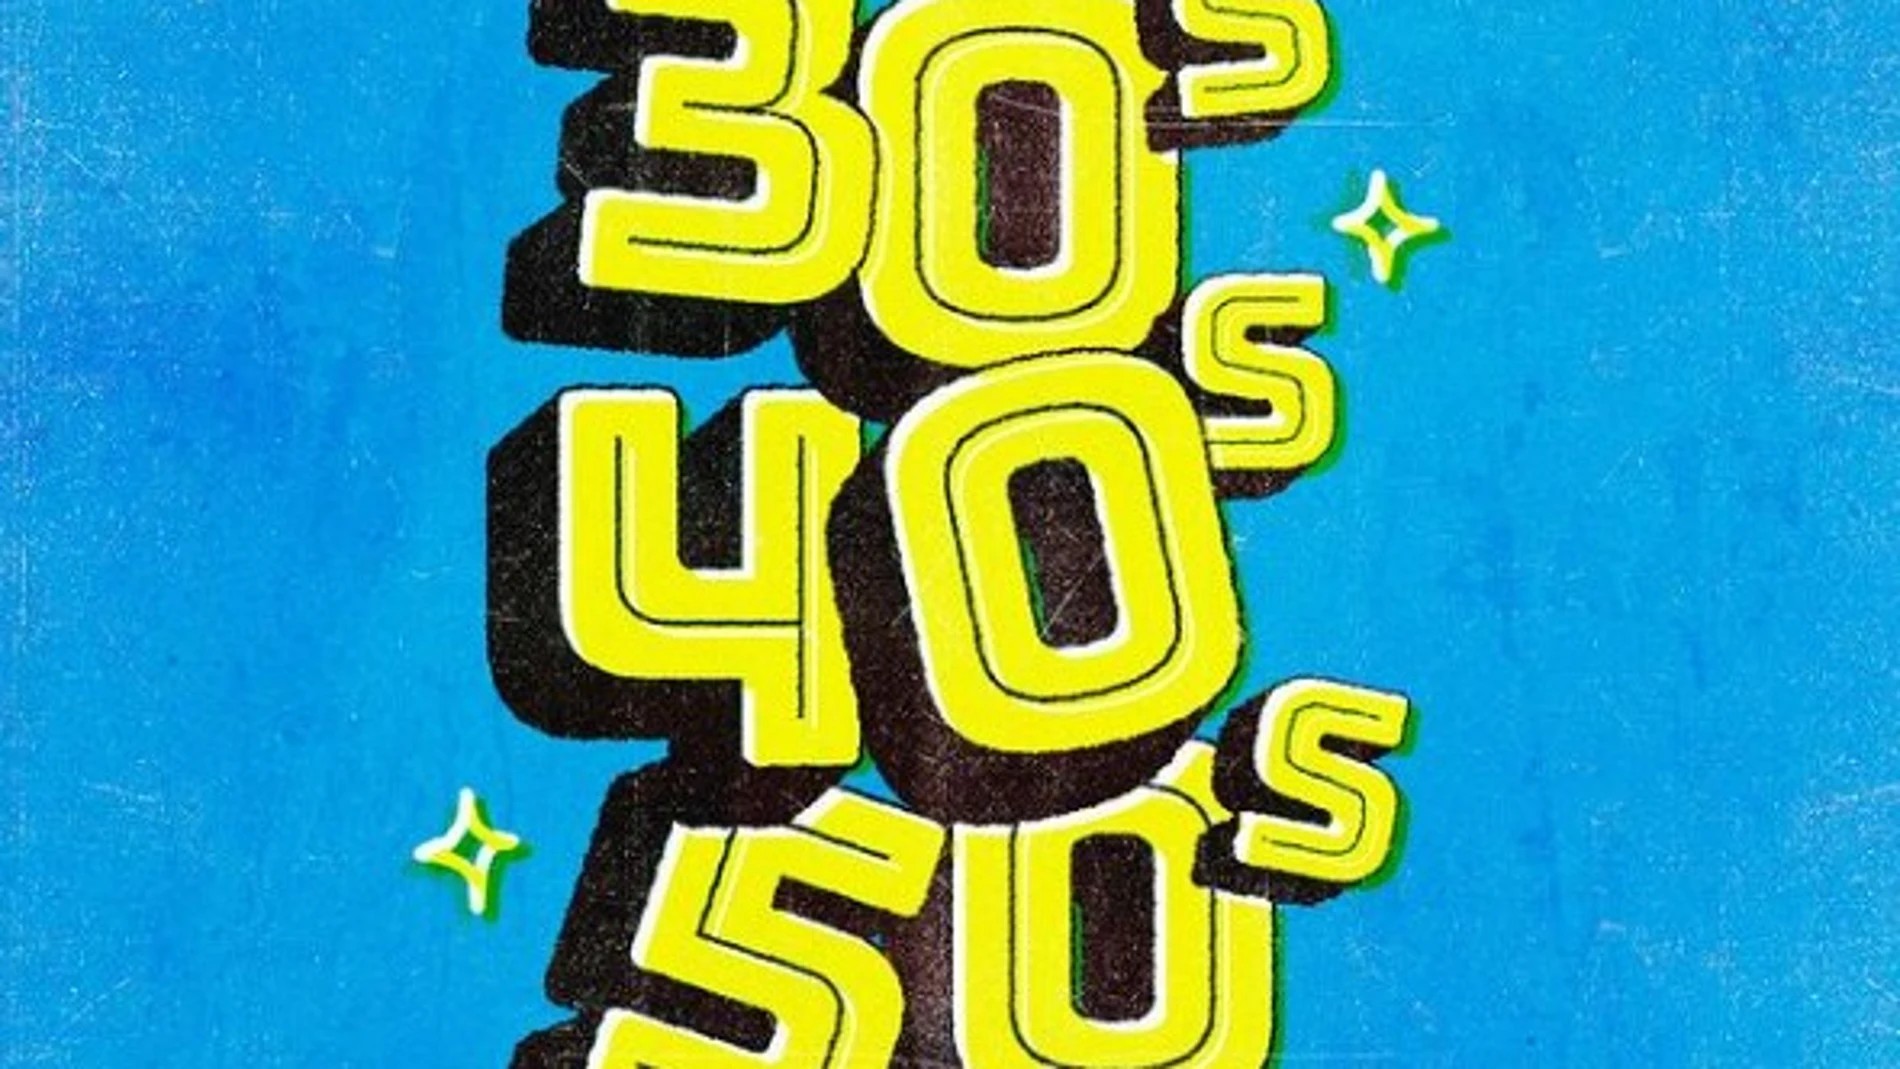 El logo del grupo 30s40s50s